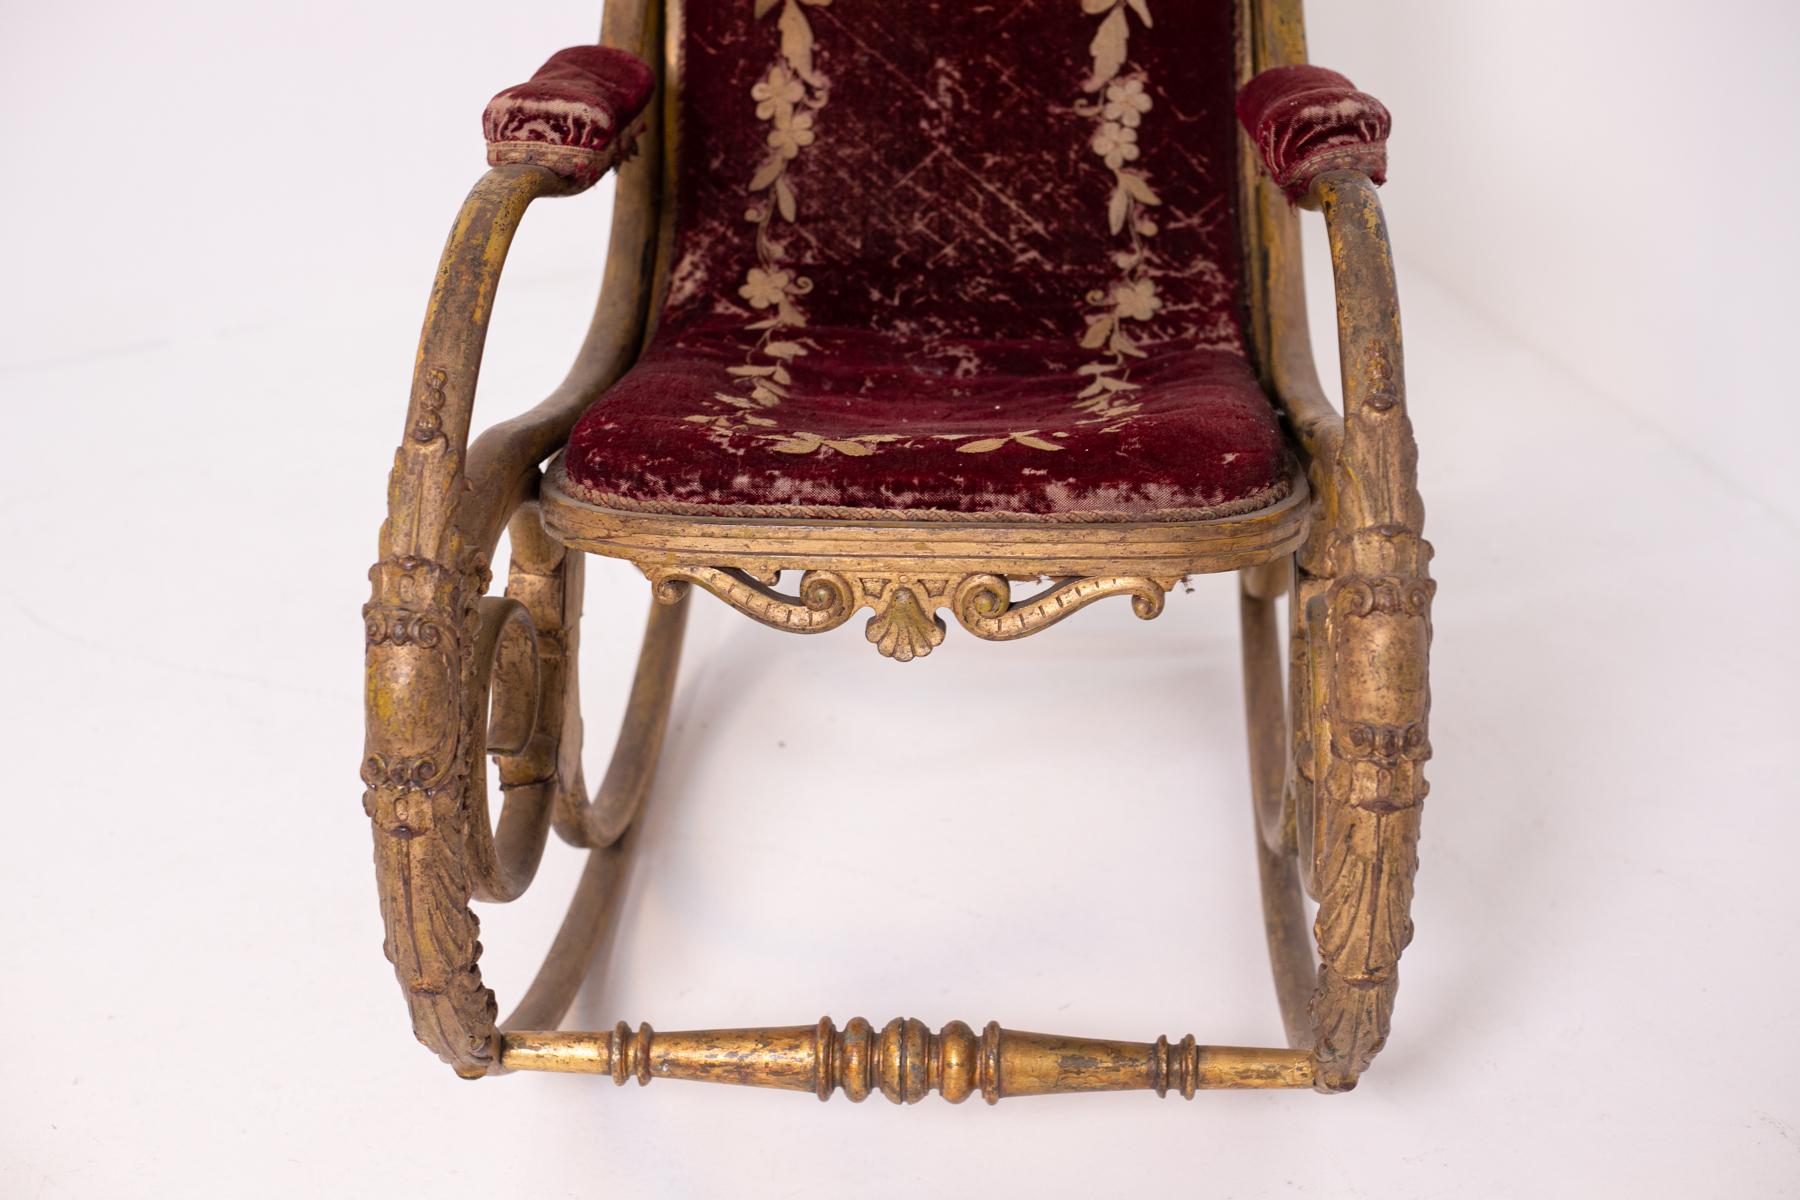 Sehr seltener Schaukelstuhl, entworfen von Michael Thonet und Anton Fix, um 1860.
Der schöne Schaukelstuhl wurde mit gebogenem Holz hergestellt, einer Technik, bei der das Holz mit Dampf behandelt wird, damit es sich biegen kann, und die vor allem